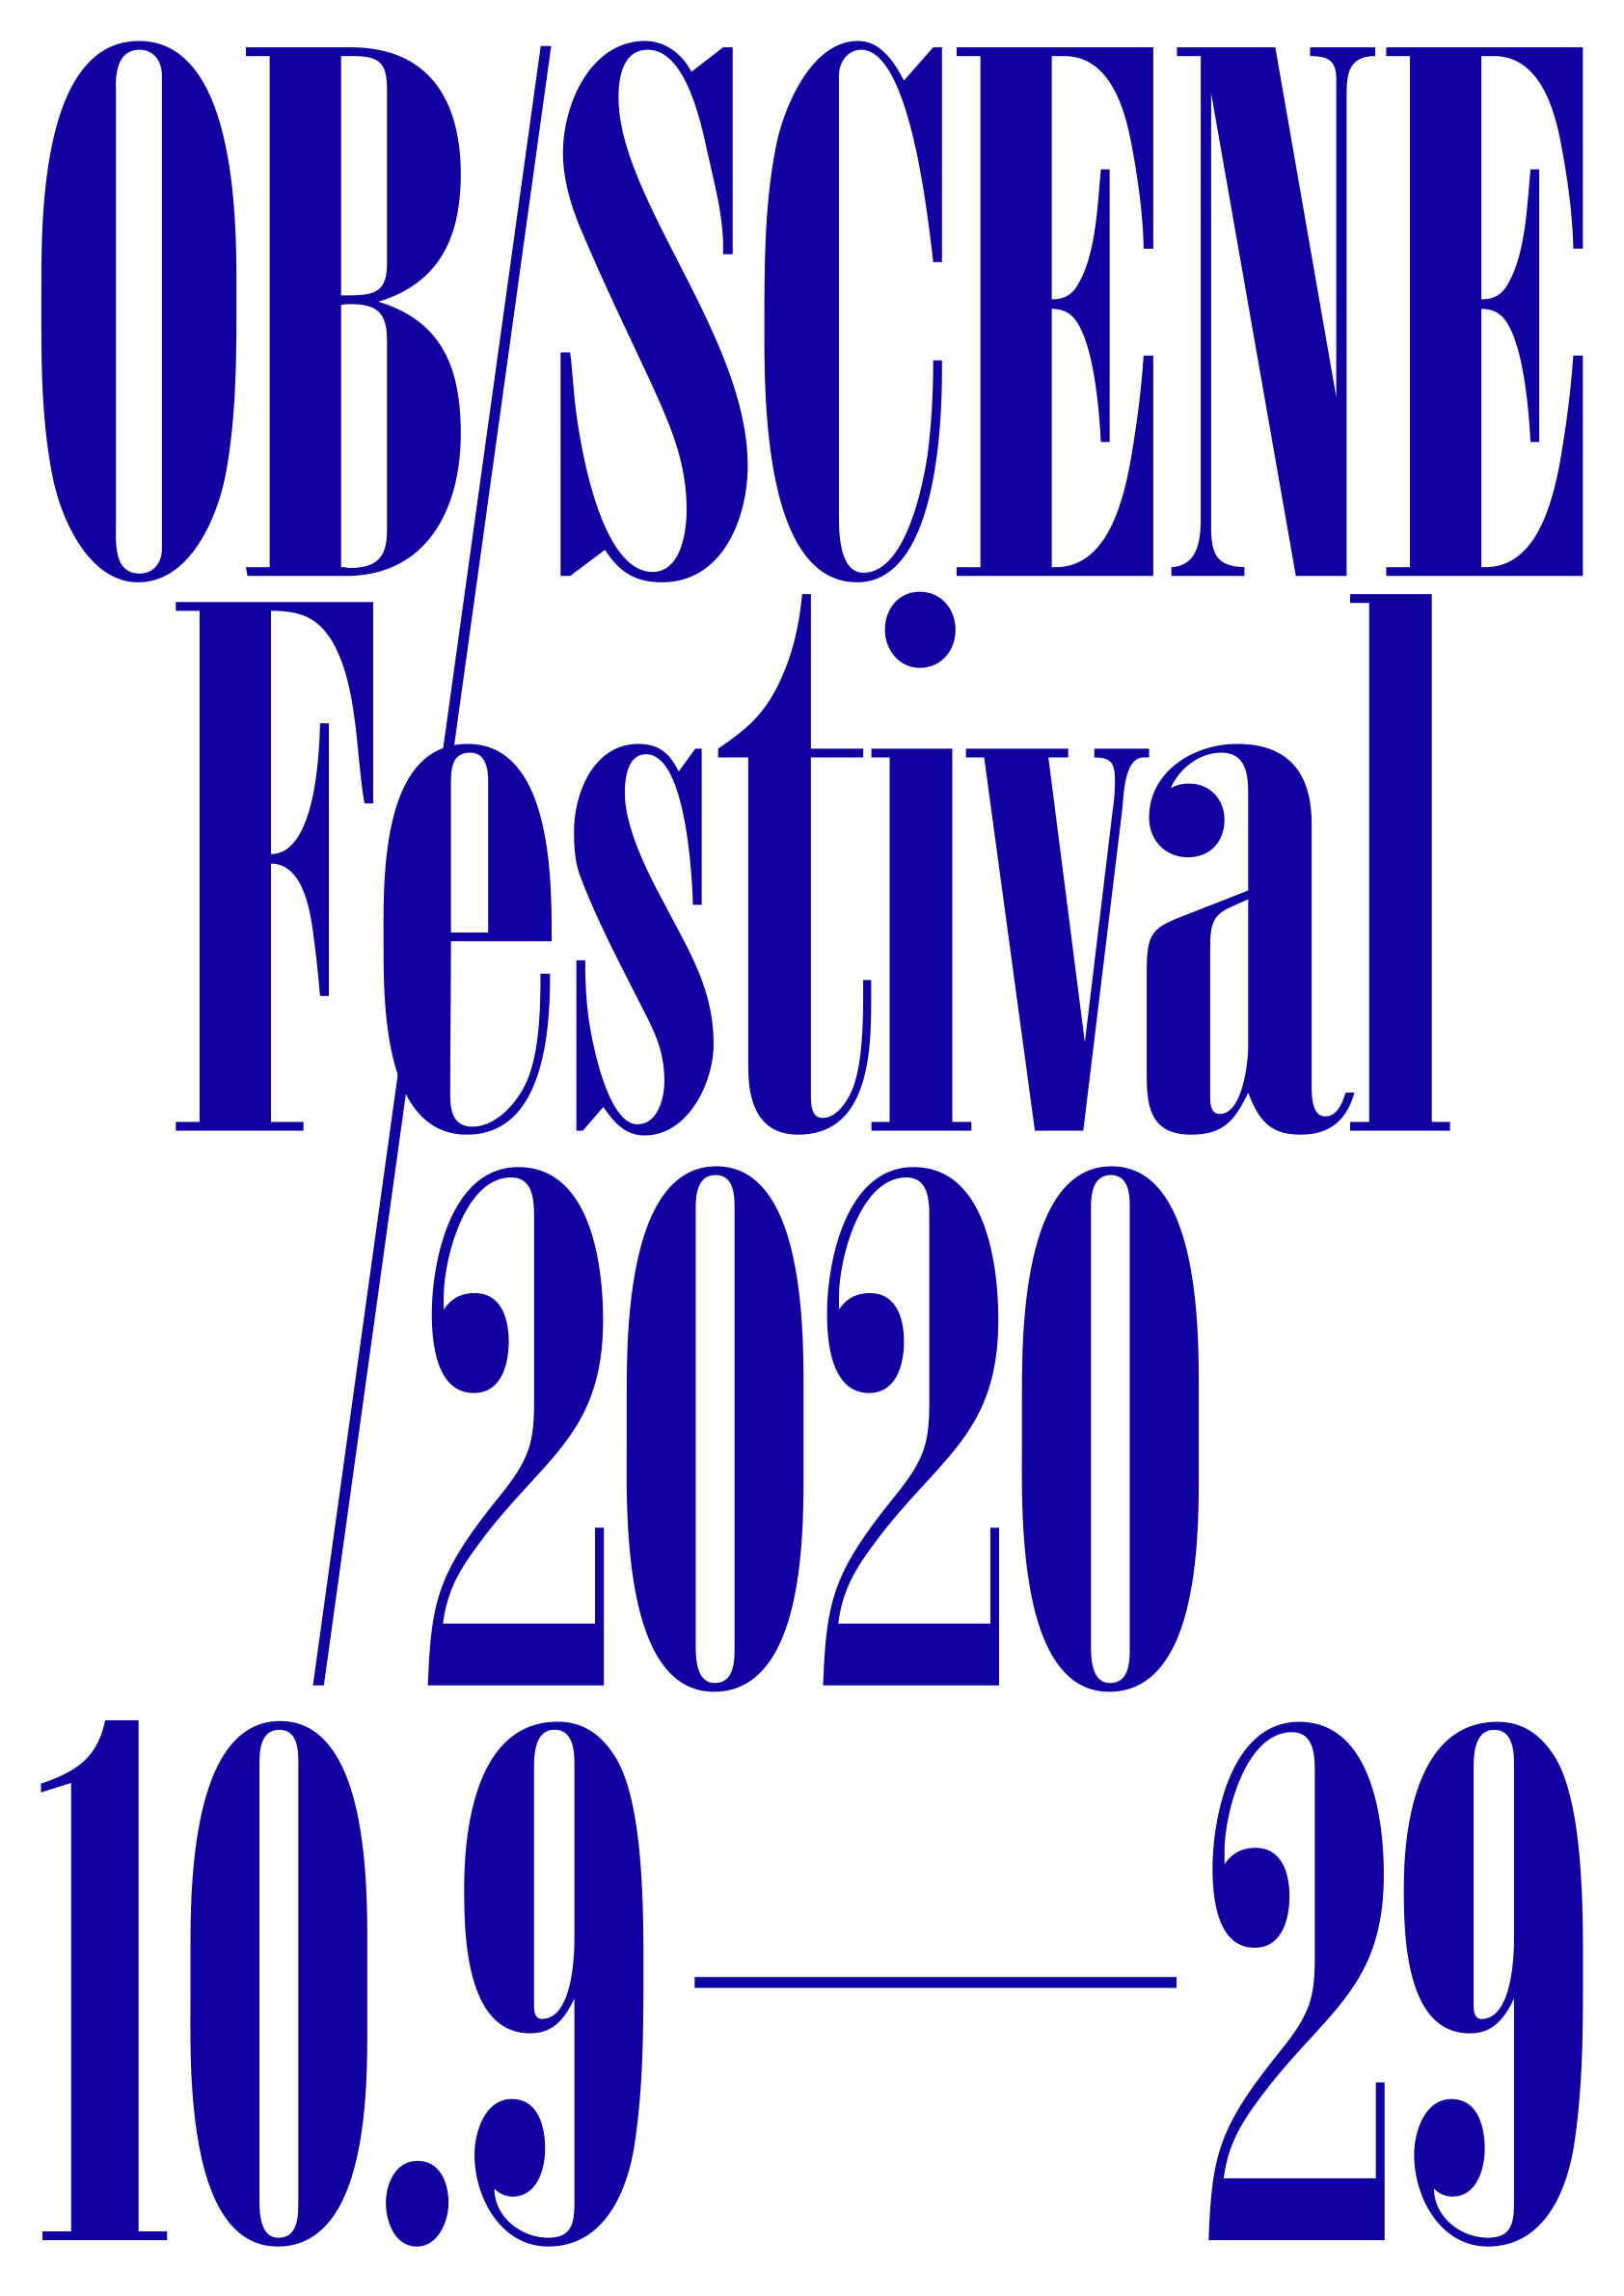 Ob-scene-Festival-2020-poster-print